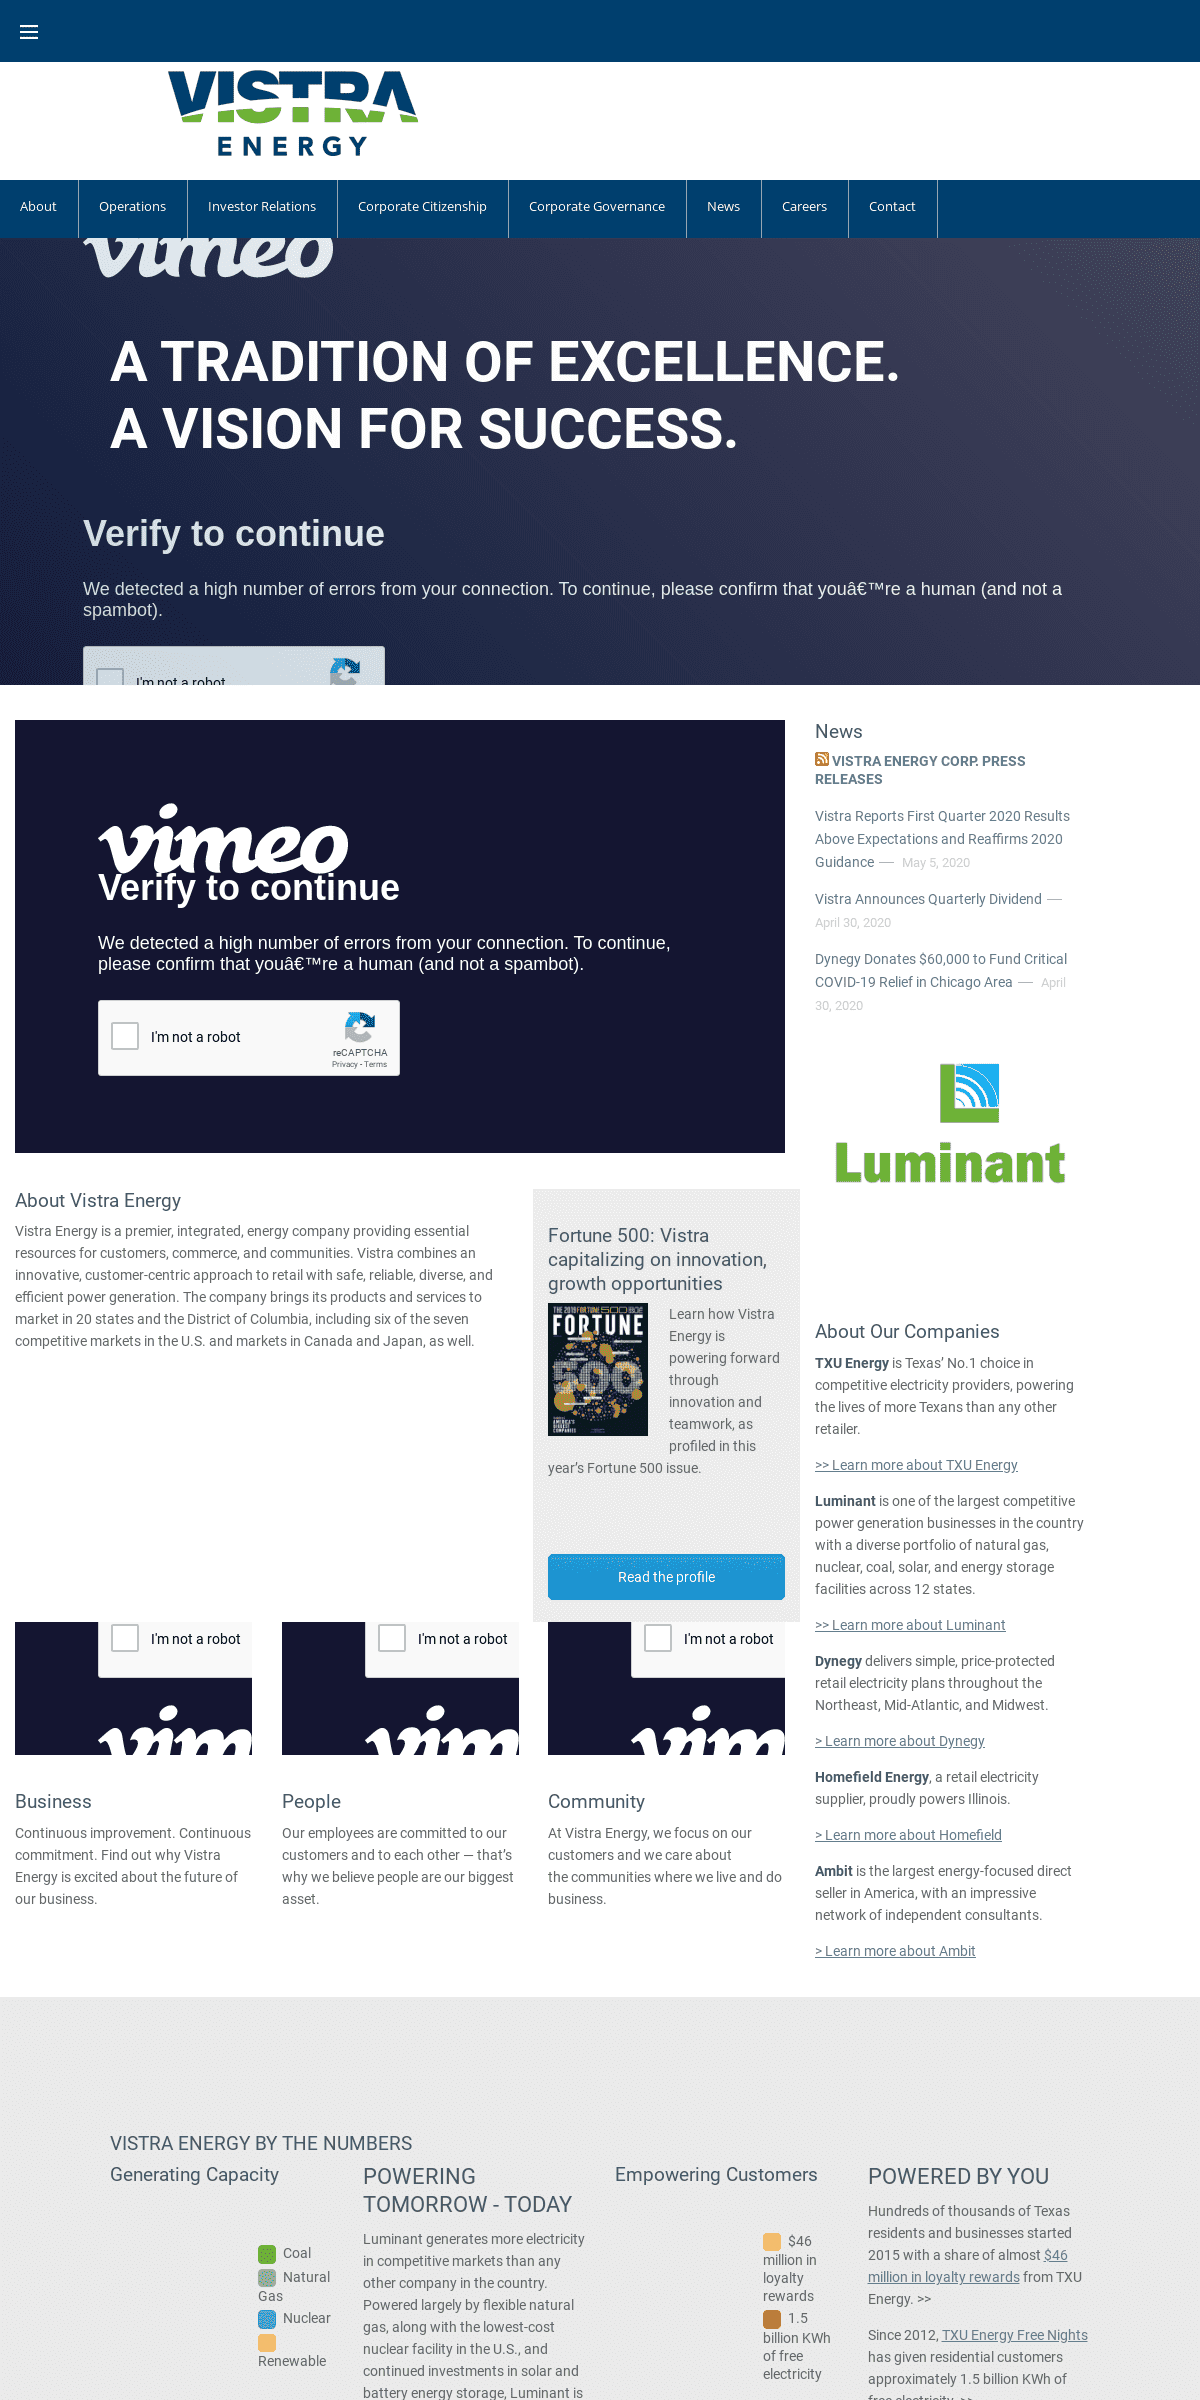 A complete backup of vistraenergy.com